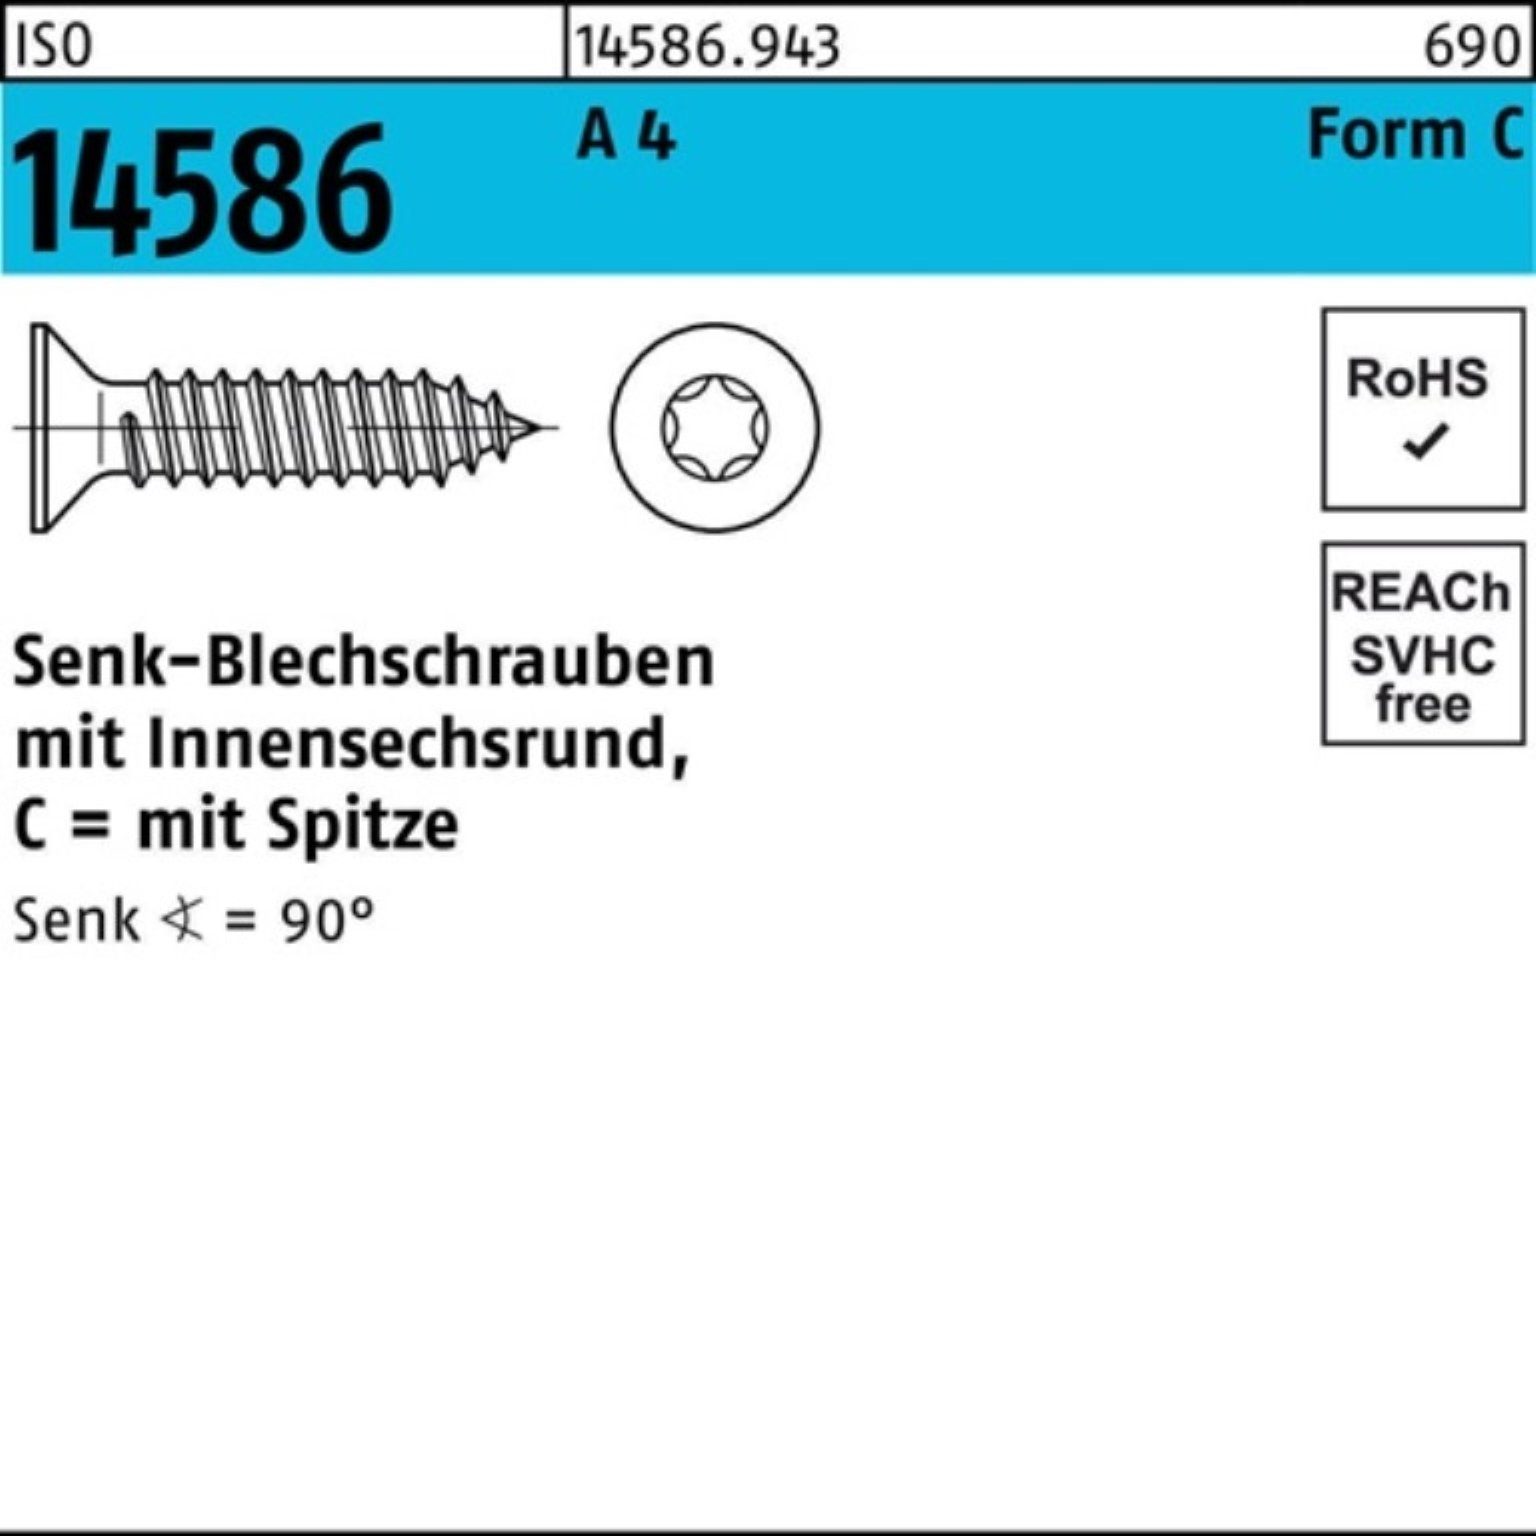 Reyher Schraube 250er Pack Senkblechschraube ISO 14586 ISR/Spitze 6,3x 60-T30 A 4 250